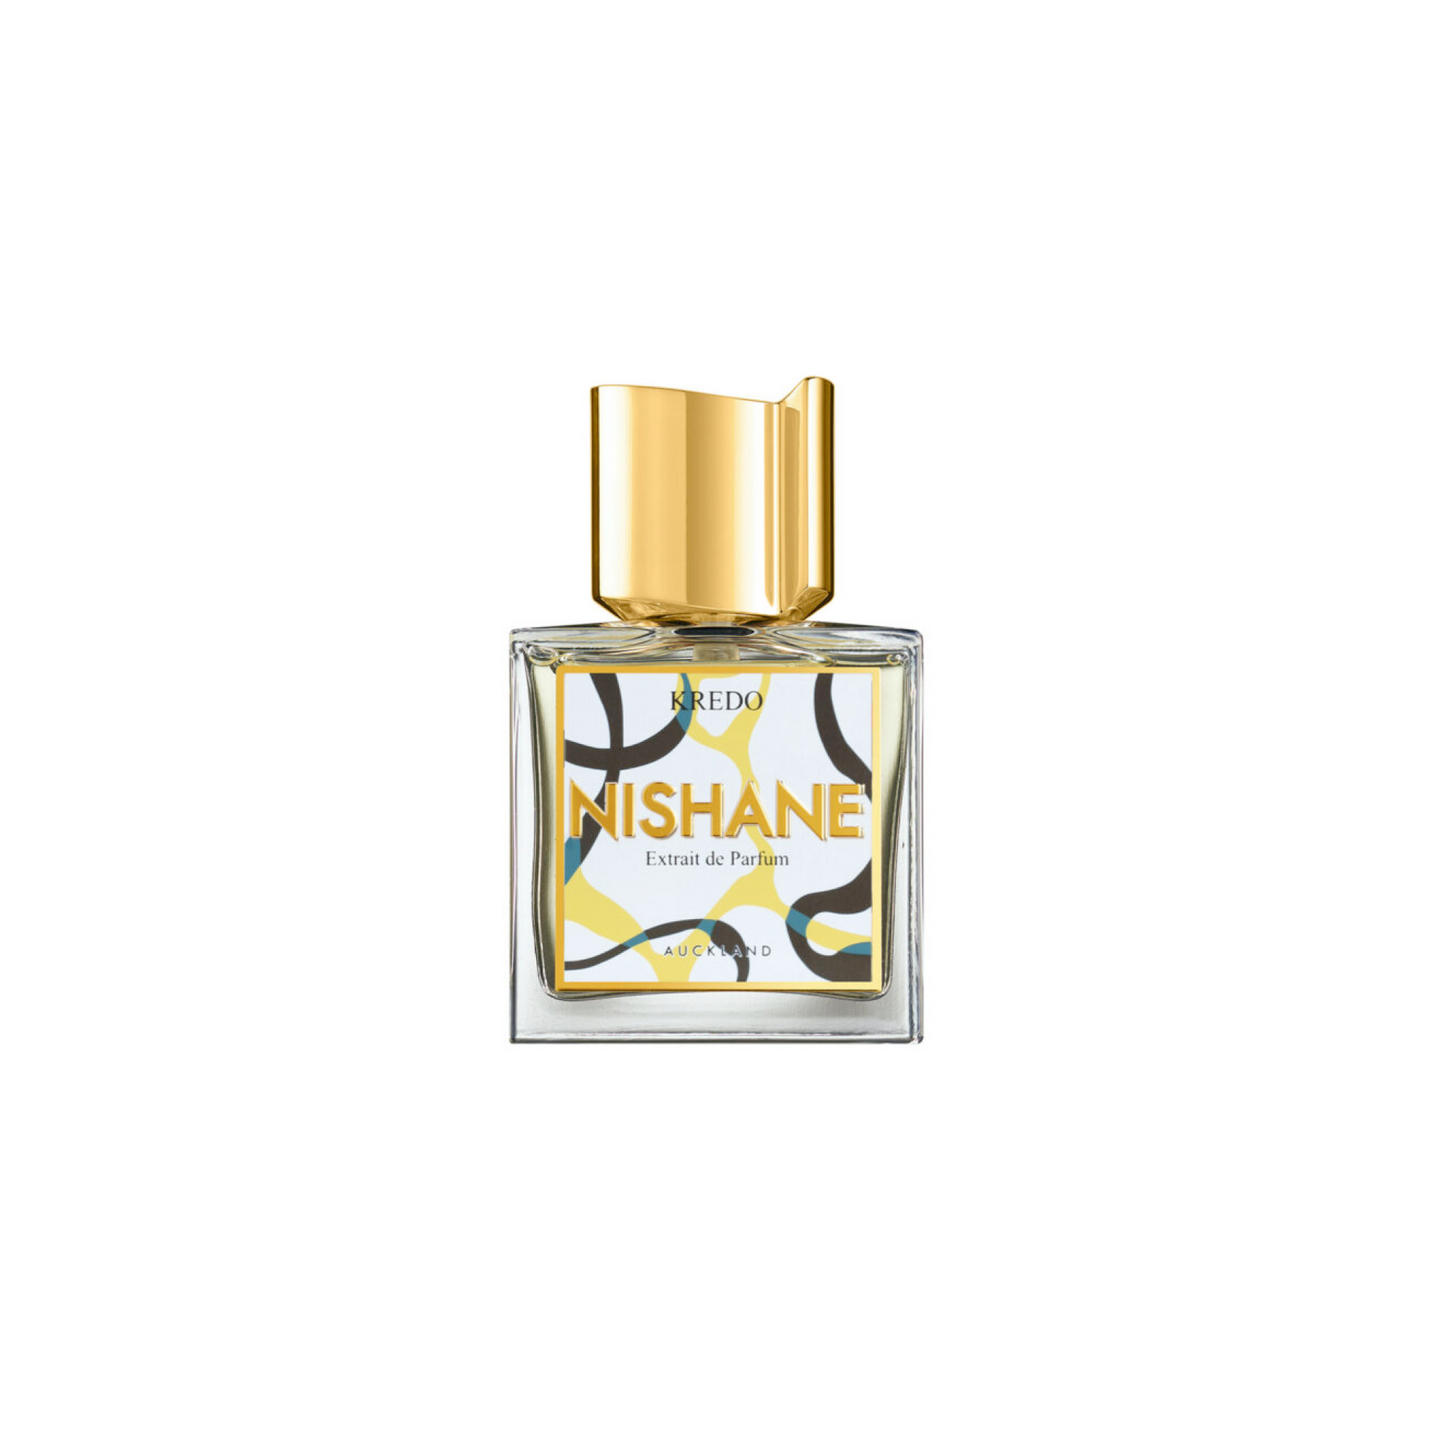 Kredo 1.7oz Extrait de Parfum